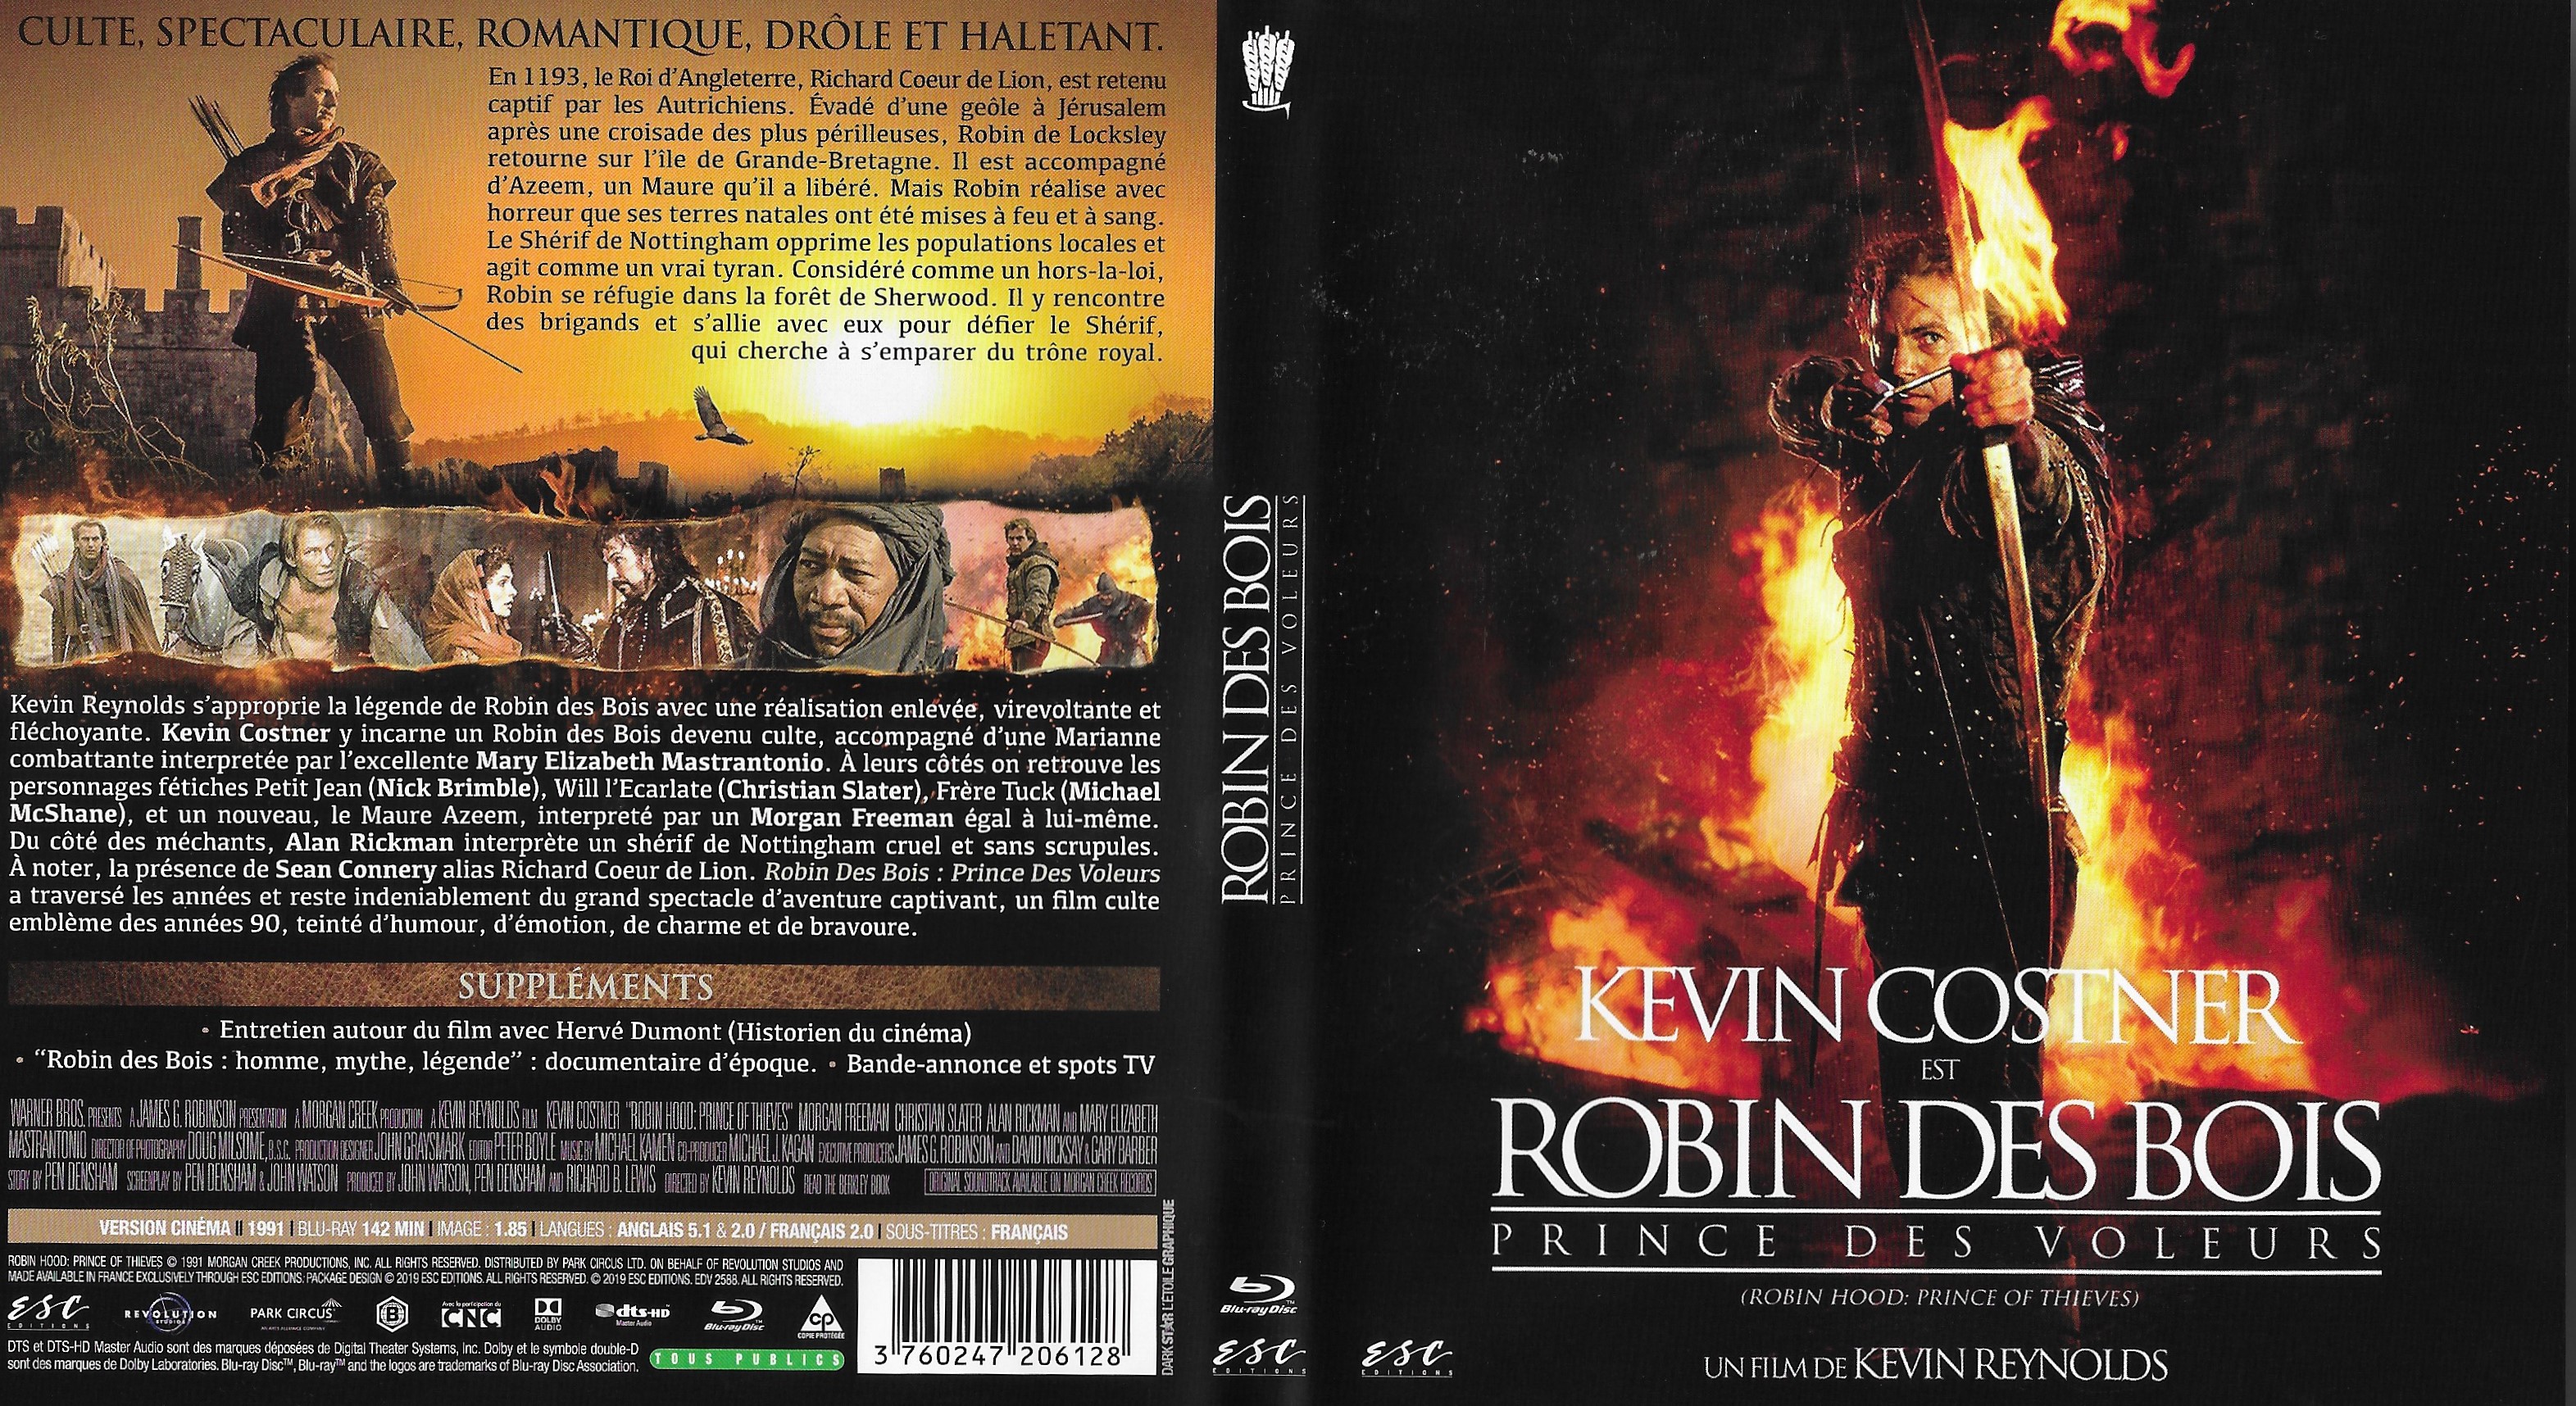 Jaquette DVD Robin des bois prince des voleurs (BLU-RAY) v2